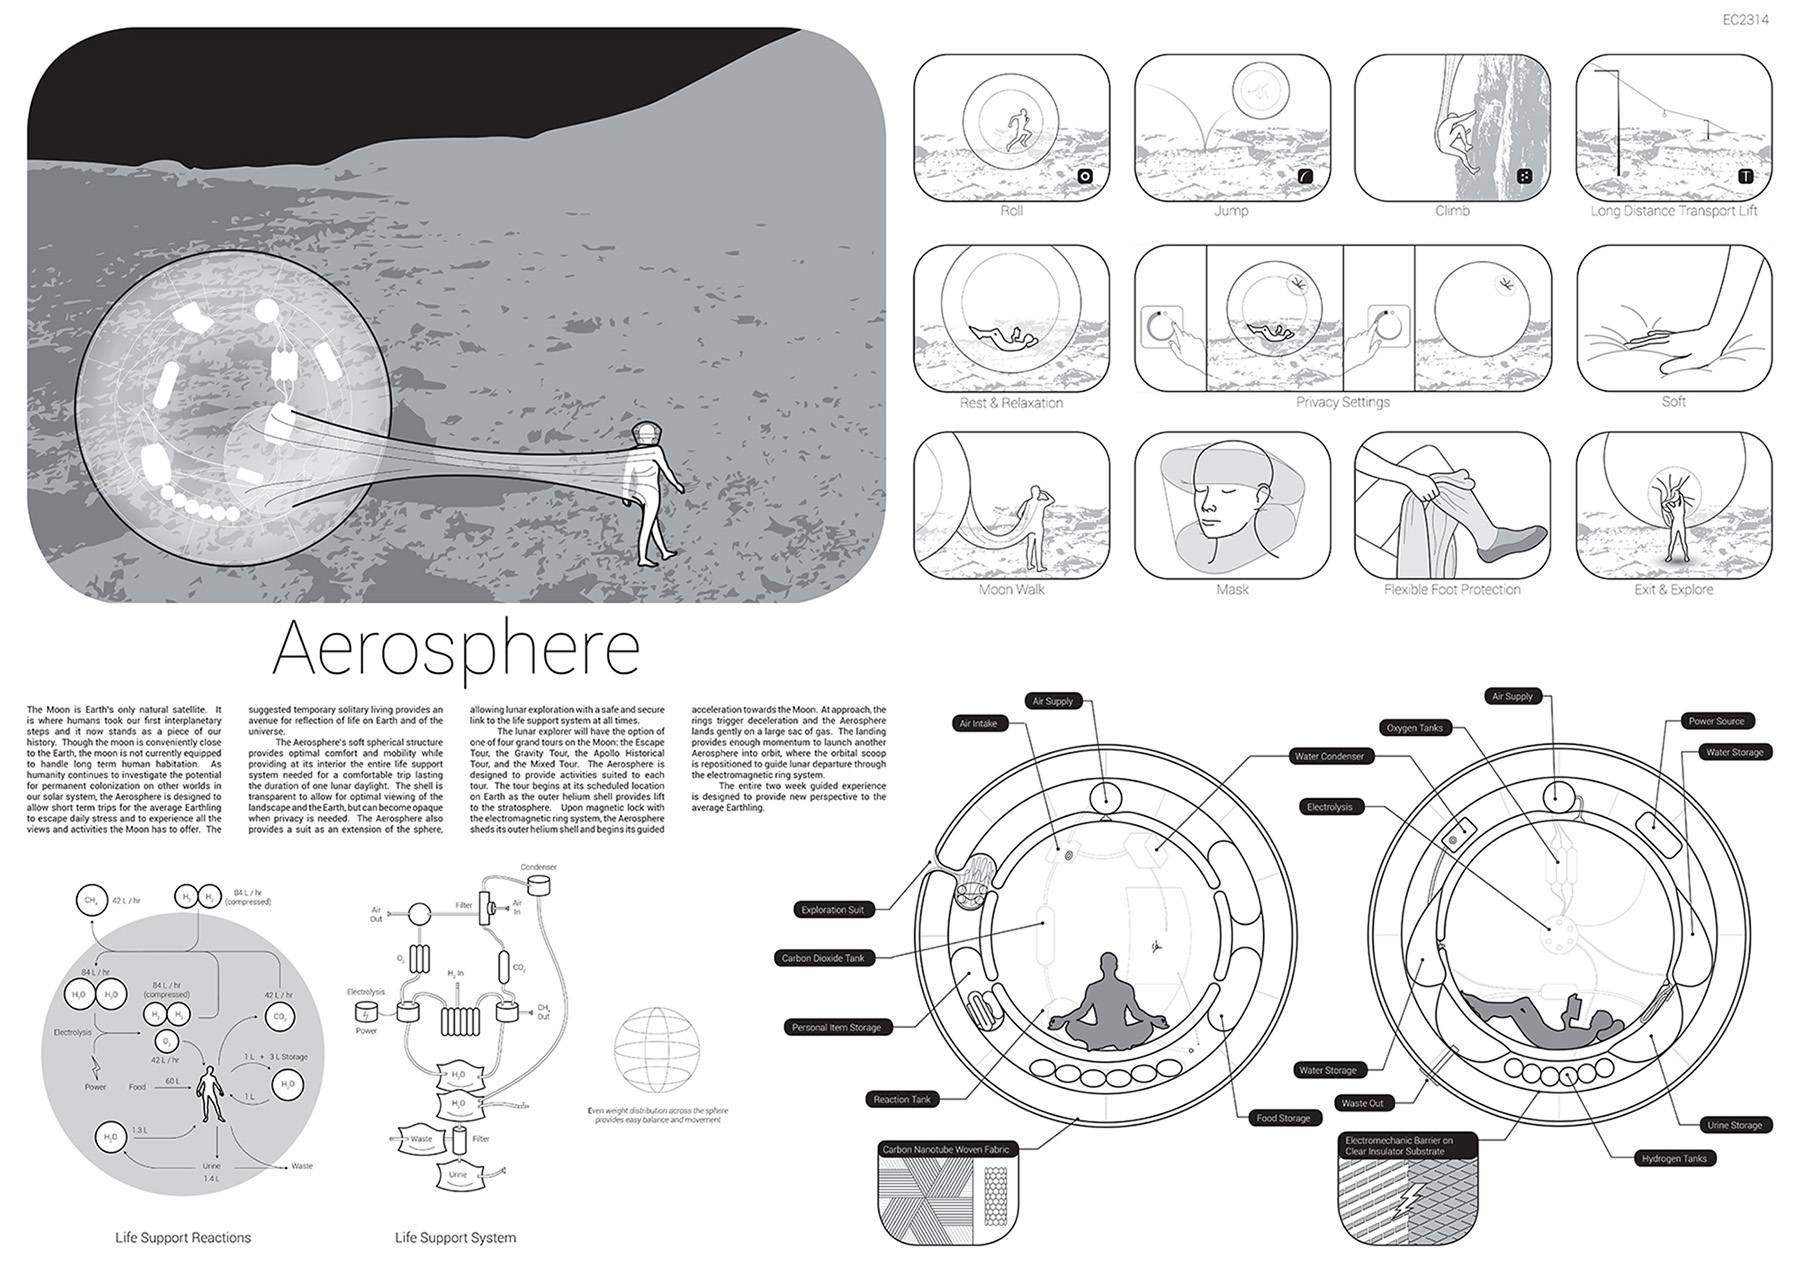 Поощрительная премия

Проект: The Aerosphere

Автор: Stephanie Stiers (Канада)

Убежище Aerosphere&nbsp;&mdash;&nbsp;самый маленький проект из&nbsp;всех представленных на&nbsp;конкурс Moontopia. Идея заключается в&nbsp;создании транспортабельной оболочки для&nbsp;туристических прогулок по&nbsp;Луне. Эта оболочка имеет все функции жизнеобеспечения и позволяет находится в&nbsp;агрессивной среде многие дни и&nbsp;недели
